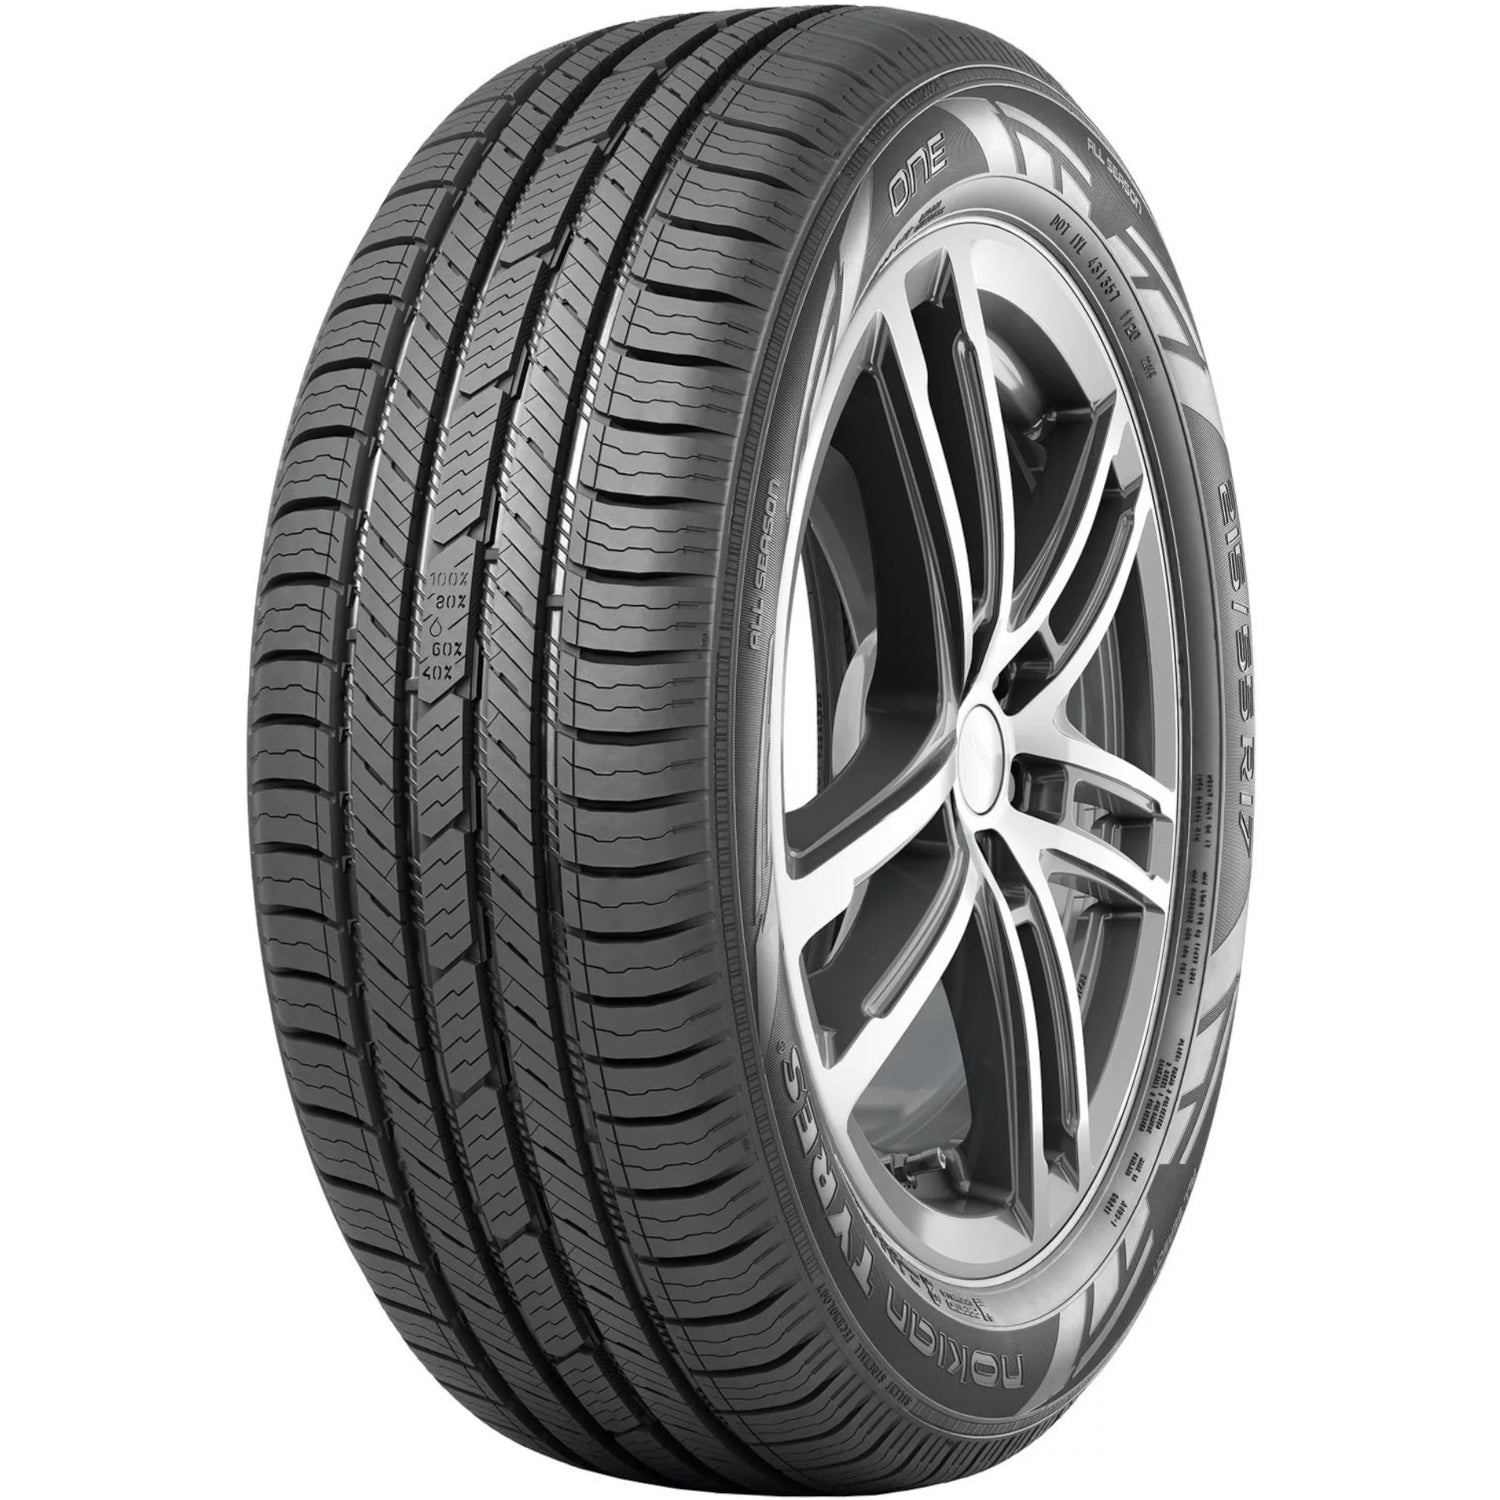 NOKIAN ONE 235/55R19XL (29.2X9.3R 19) Tires